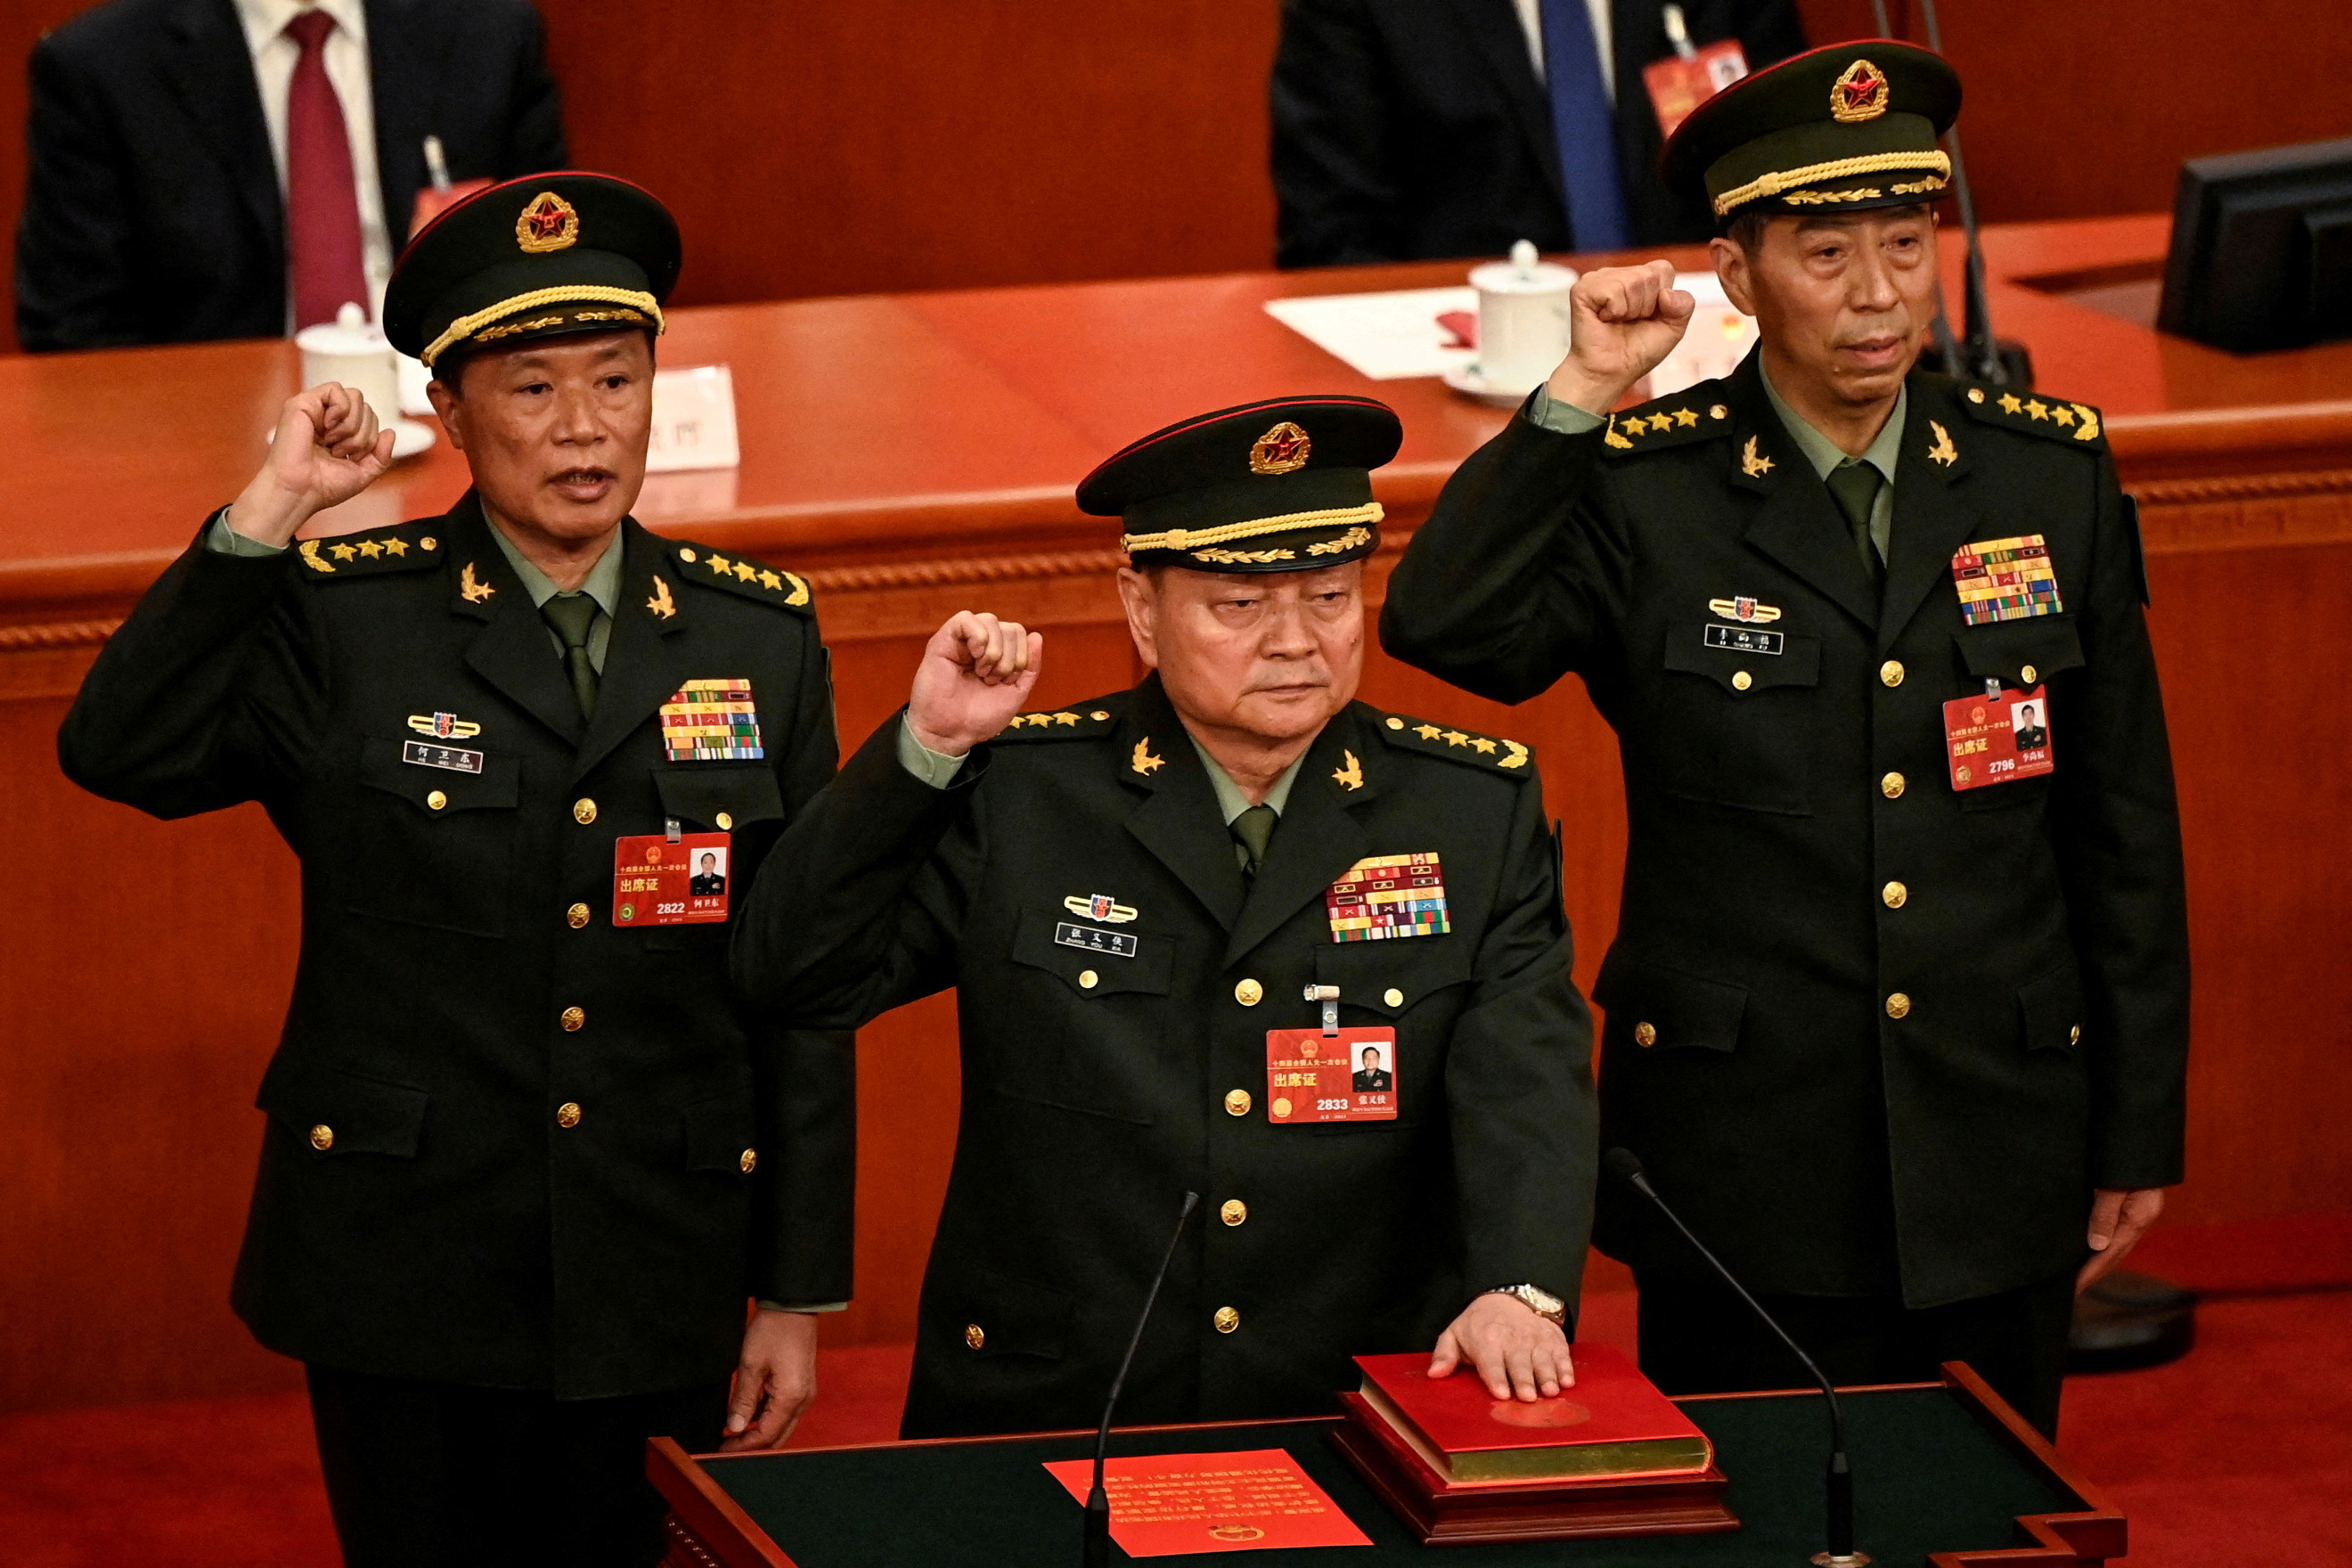 El régimen chino ignoró el llamado de EEUU al diálogo y amenazó nuevamente a Taiwán: “No prometemos renunciar a la fuerza”